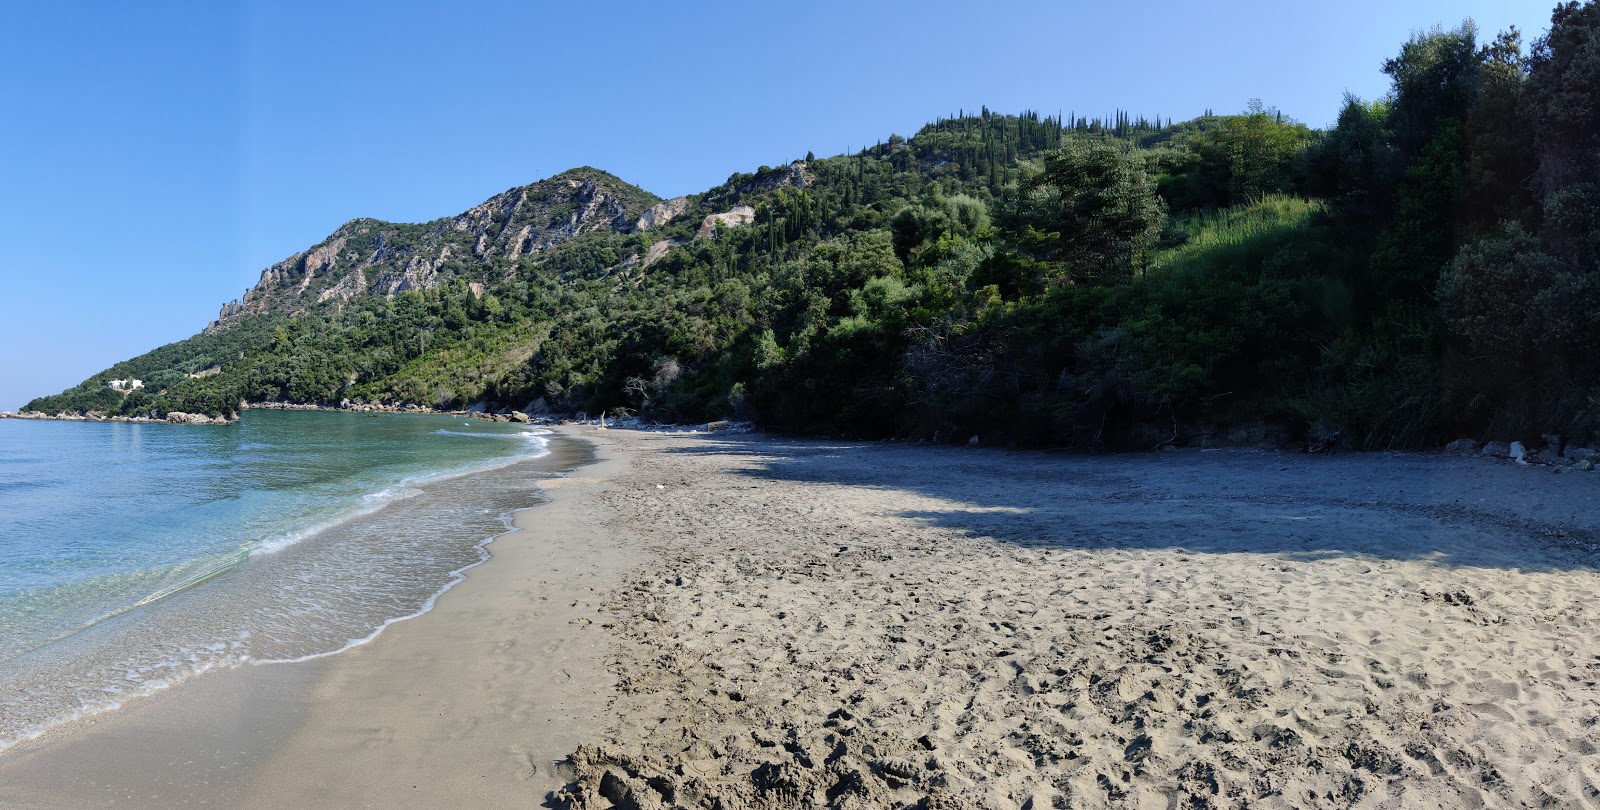 Foto af Arilla beach - populært sted blandt afslapningskendere